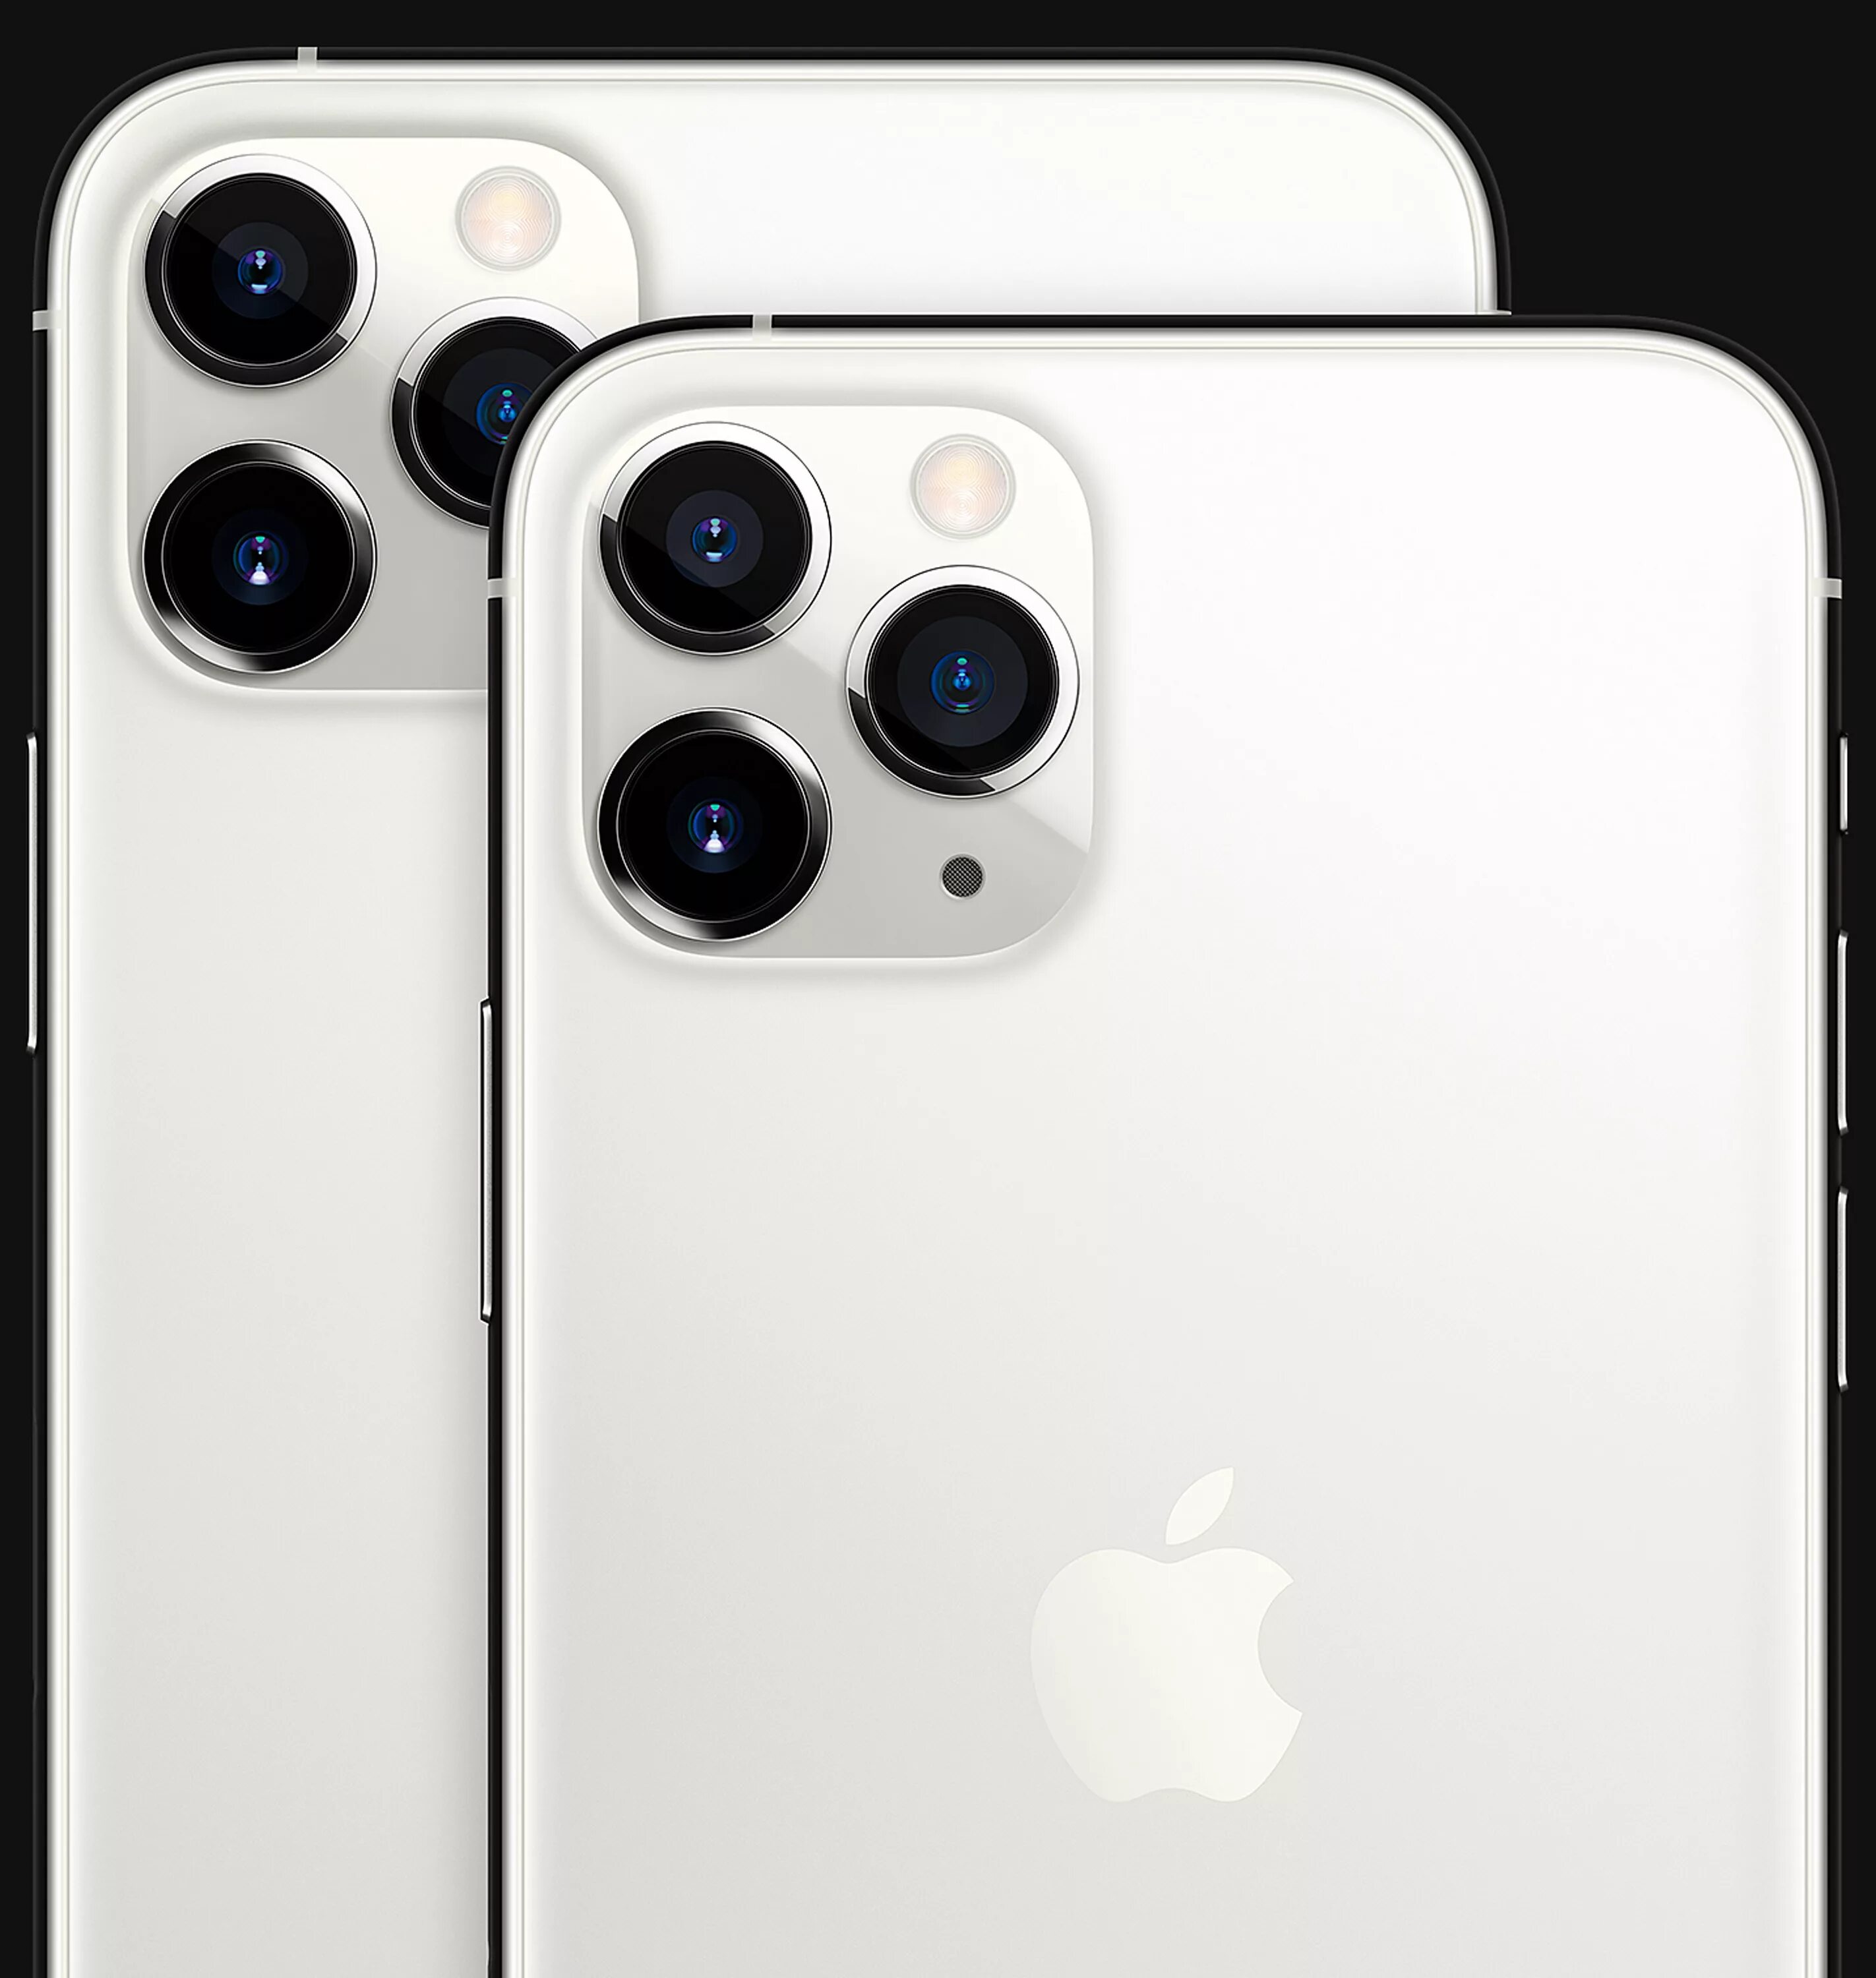 Айфон 11 купить в магазине. Iphone 11 Pro Max Silver. Айфон 12 Промакс белый. Айфон 11 Промакс белый. Айфон 13 Промакс белый.